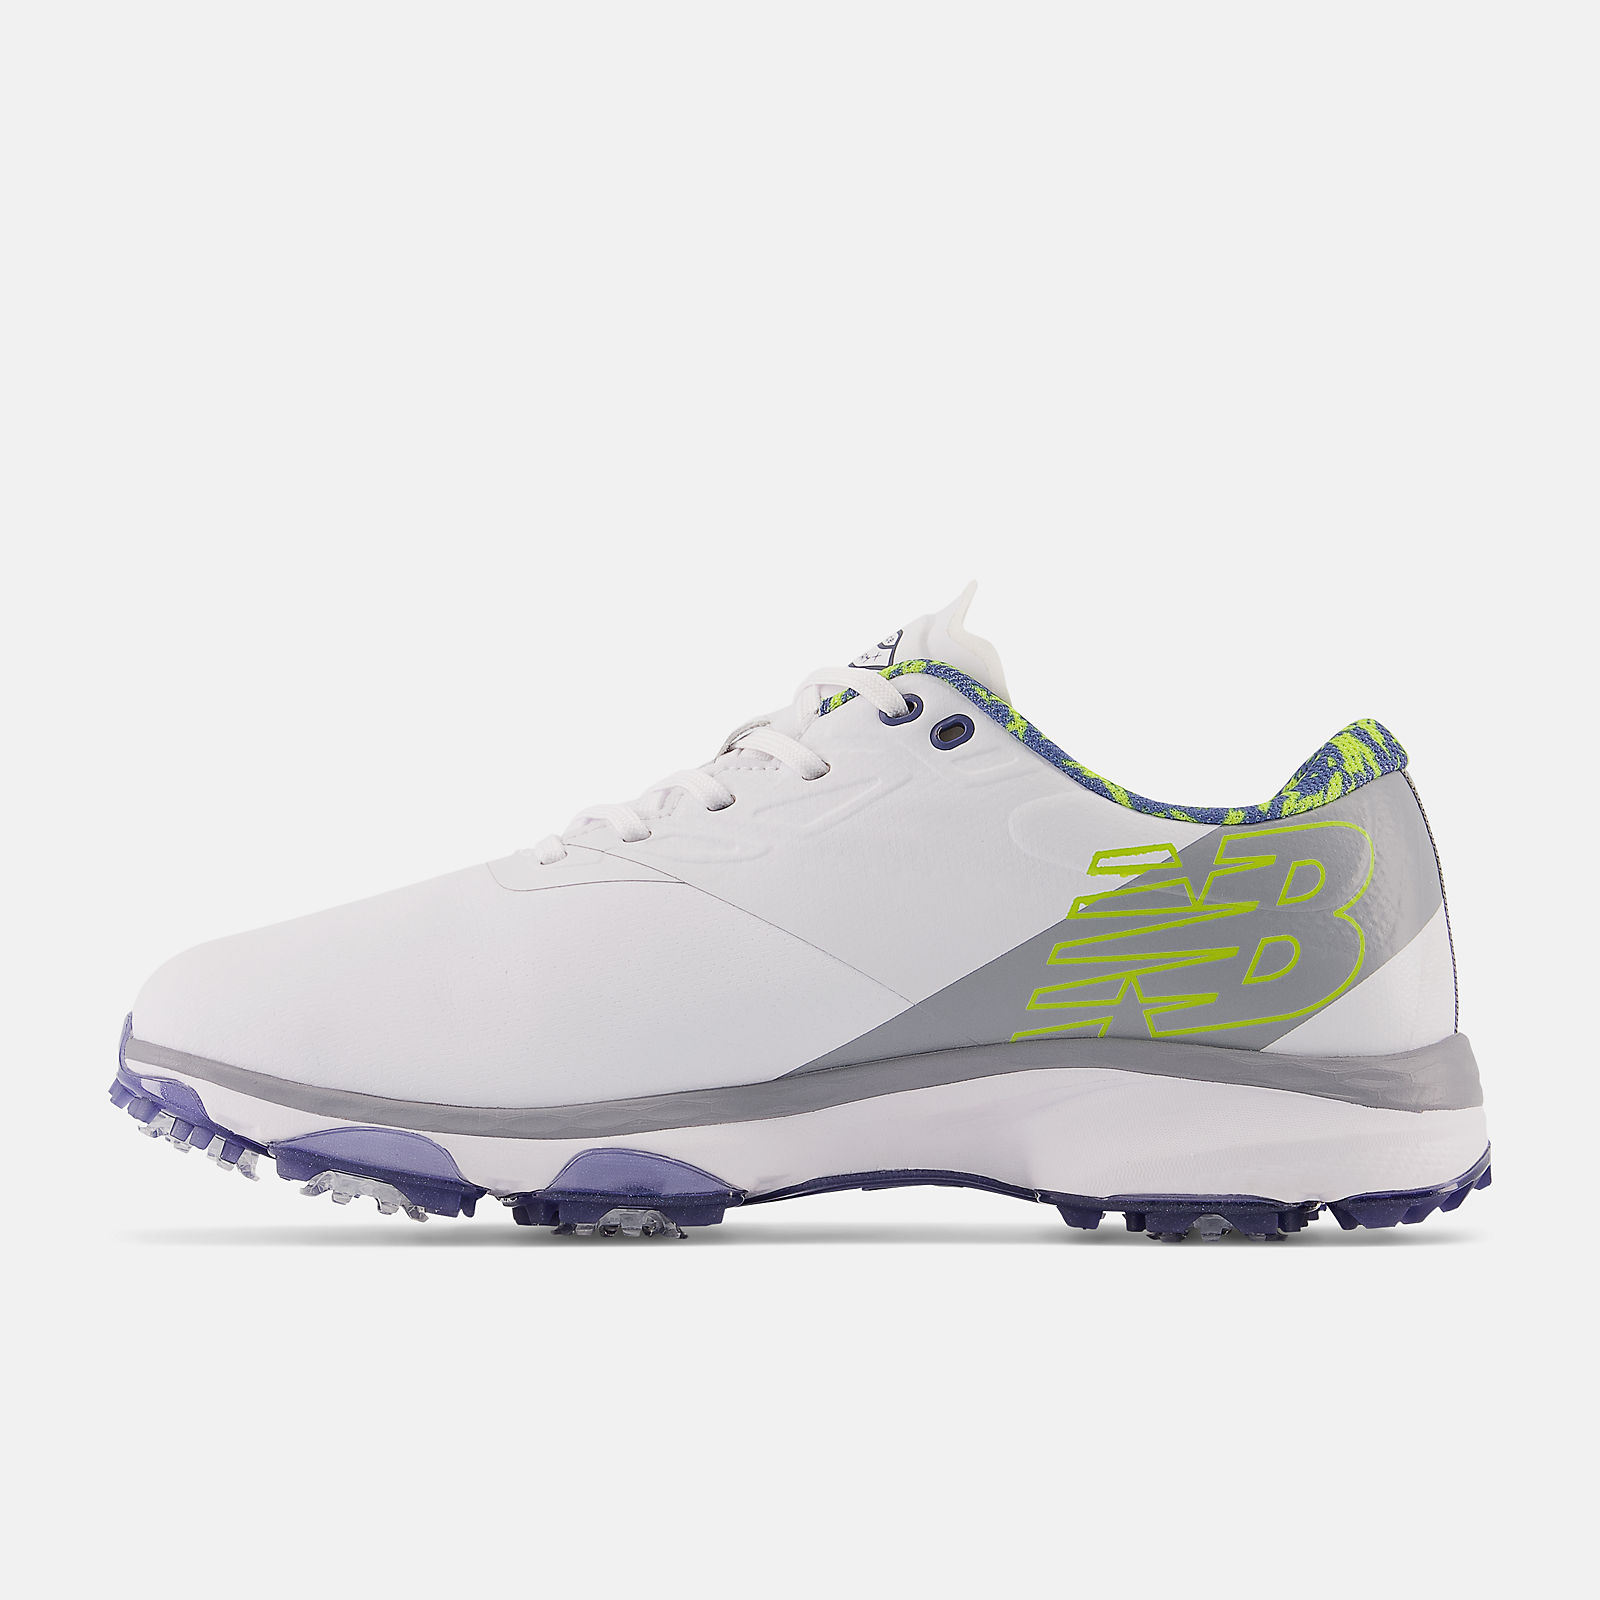 Visiter la boutique New BalanceNew Balance Chaussures de golf Fresh Foam X Defender pour homme 